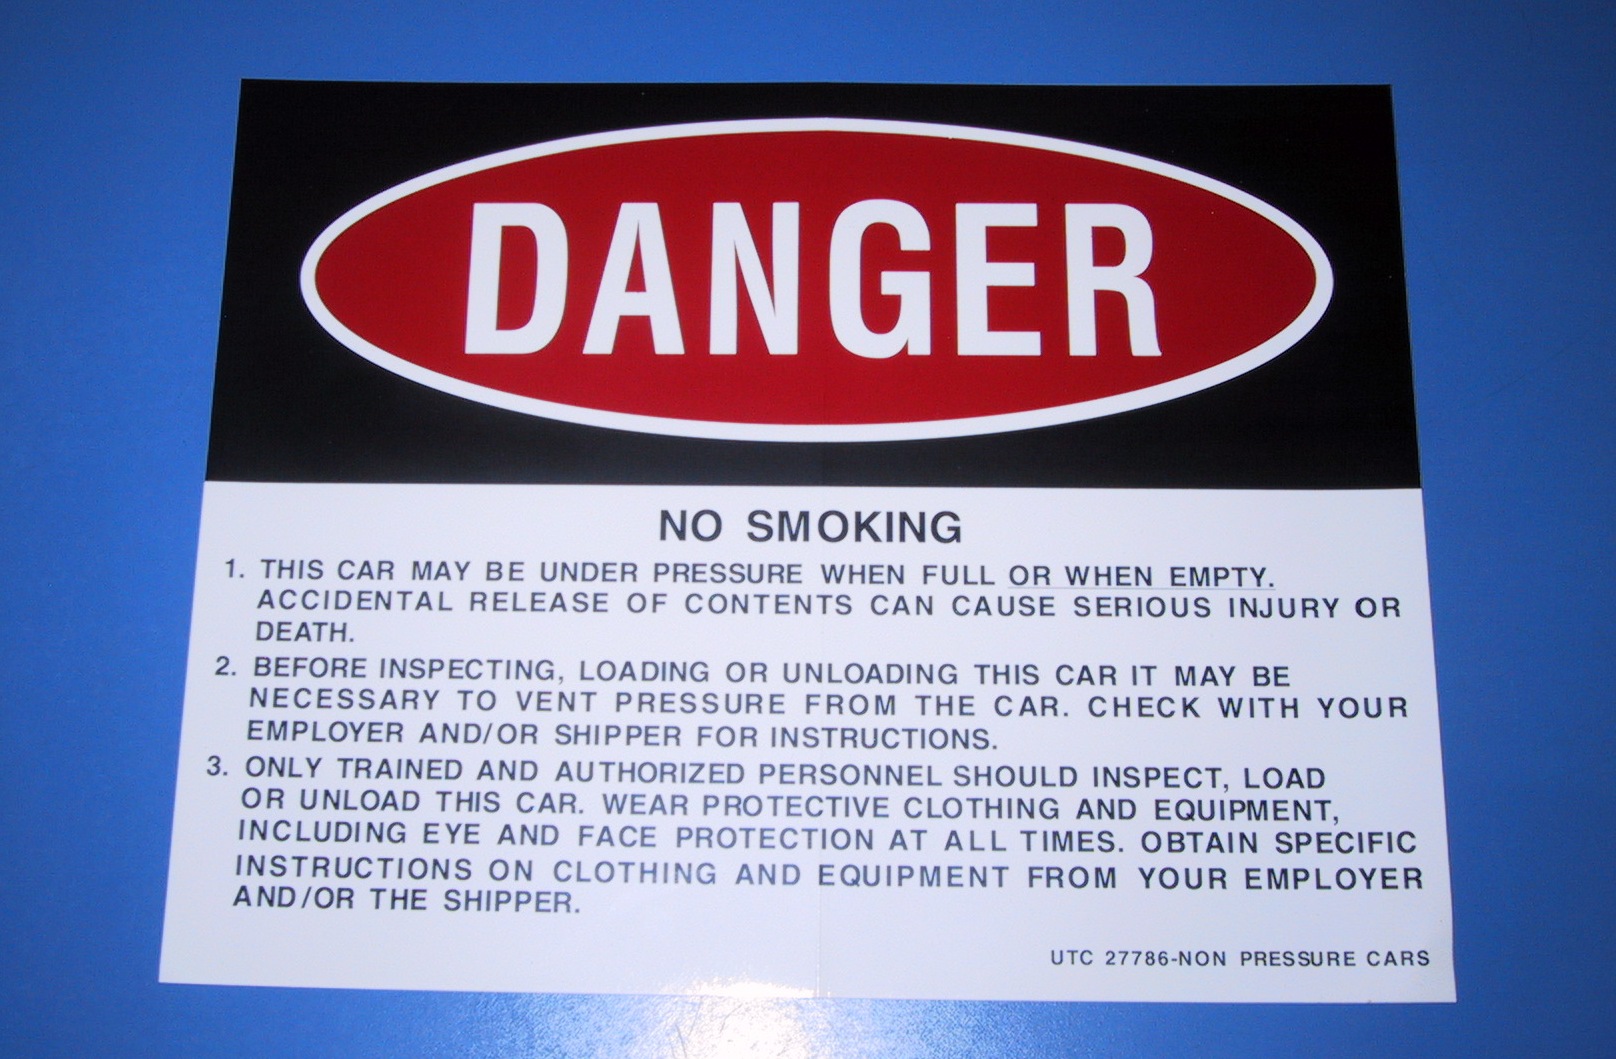 Danger Label - For Pressure Cars